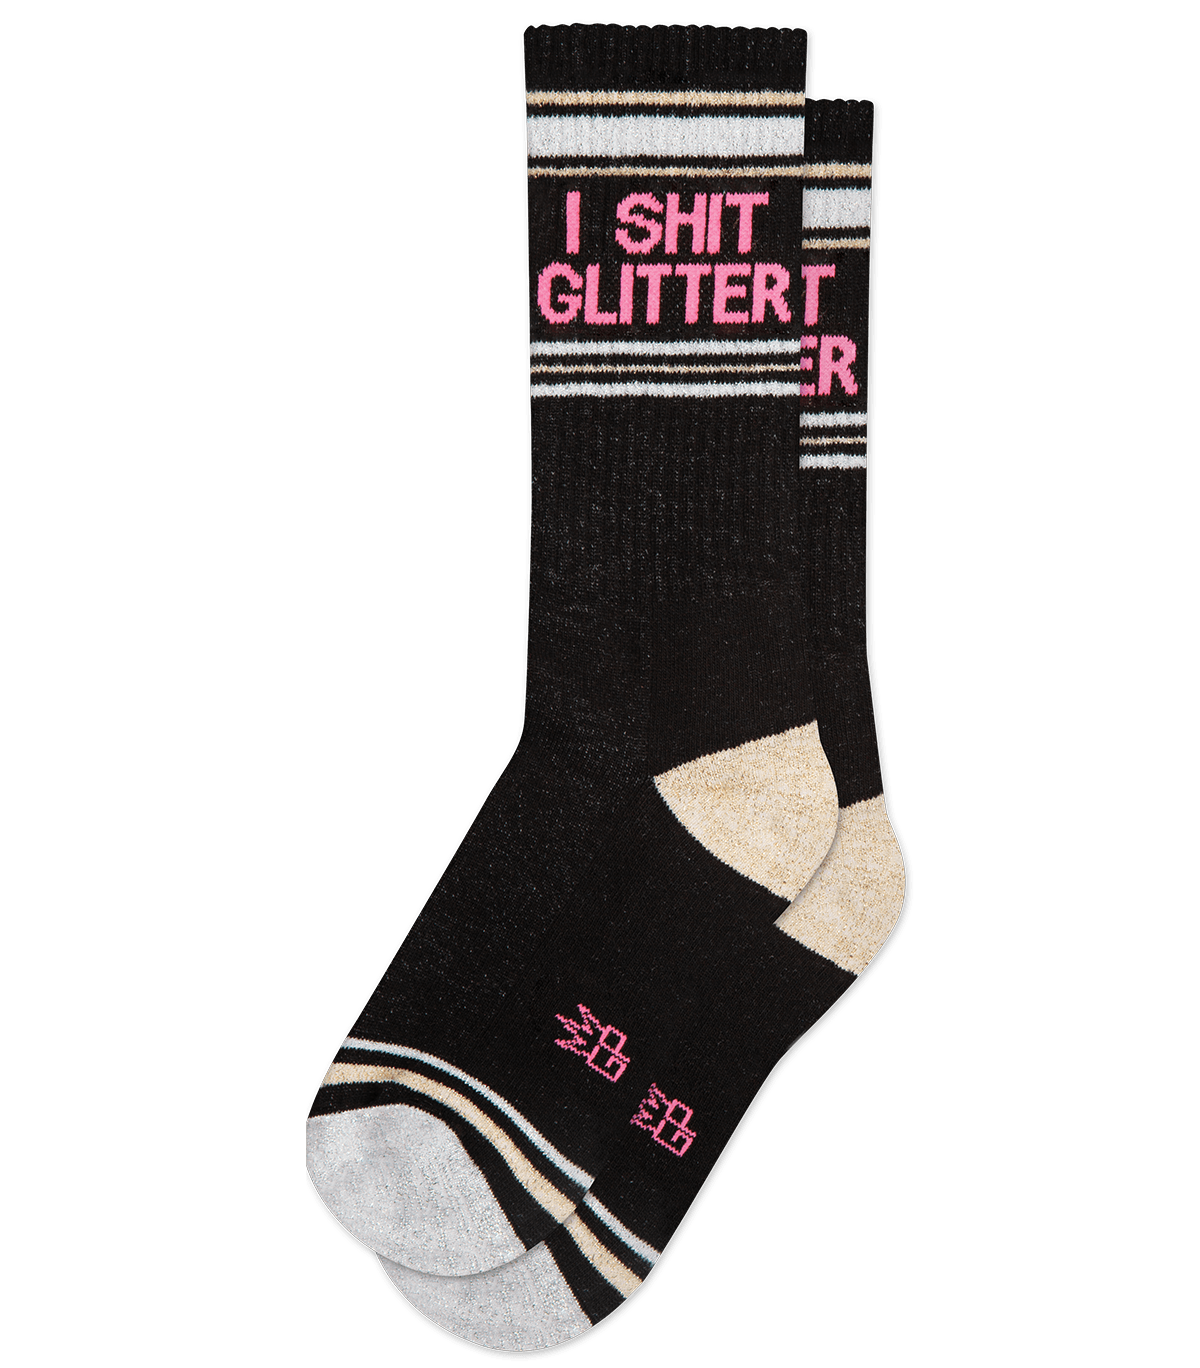 I Shit Glitter gym socks